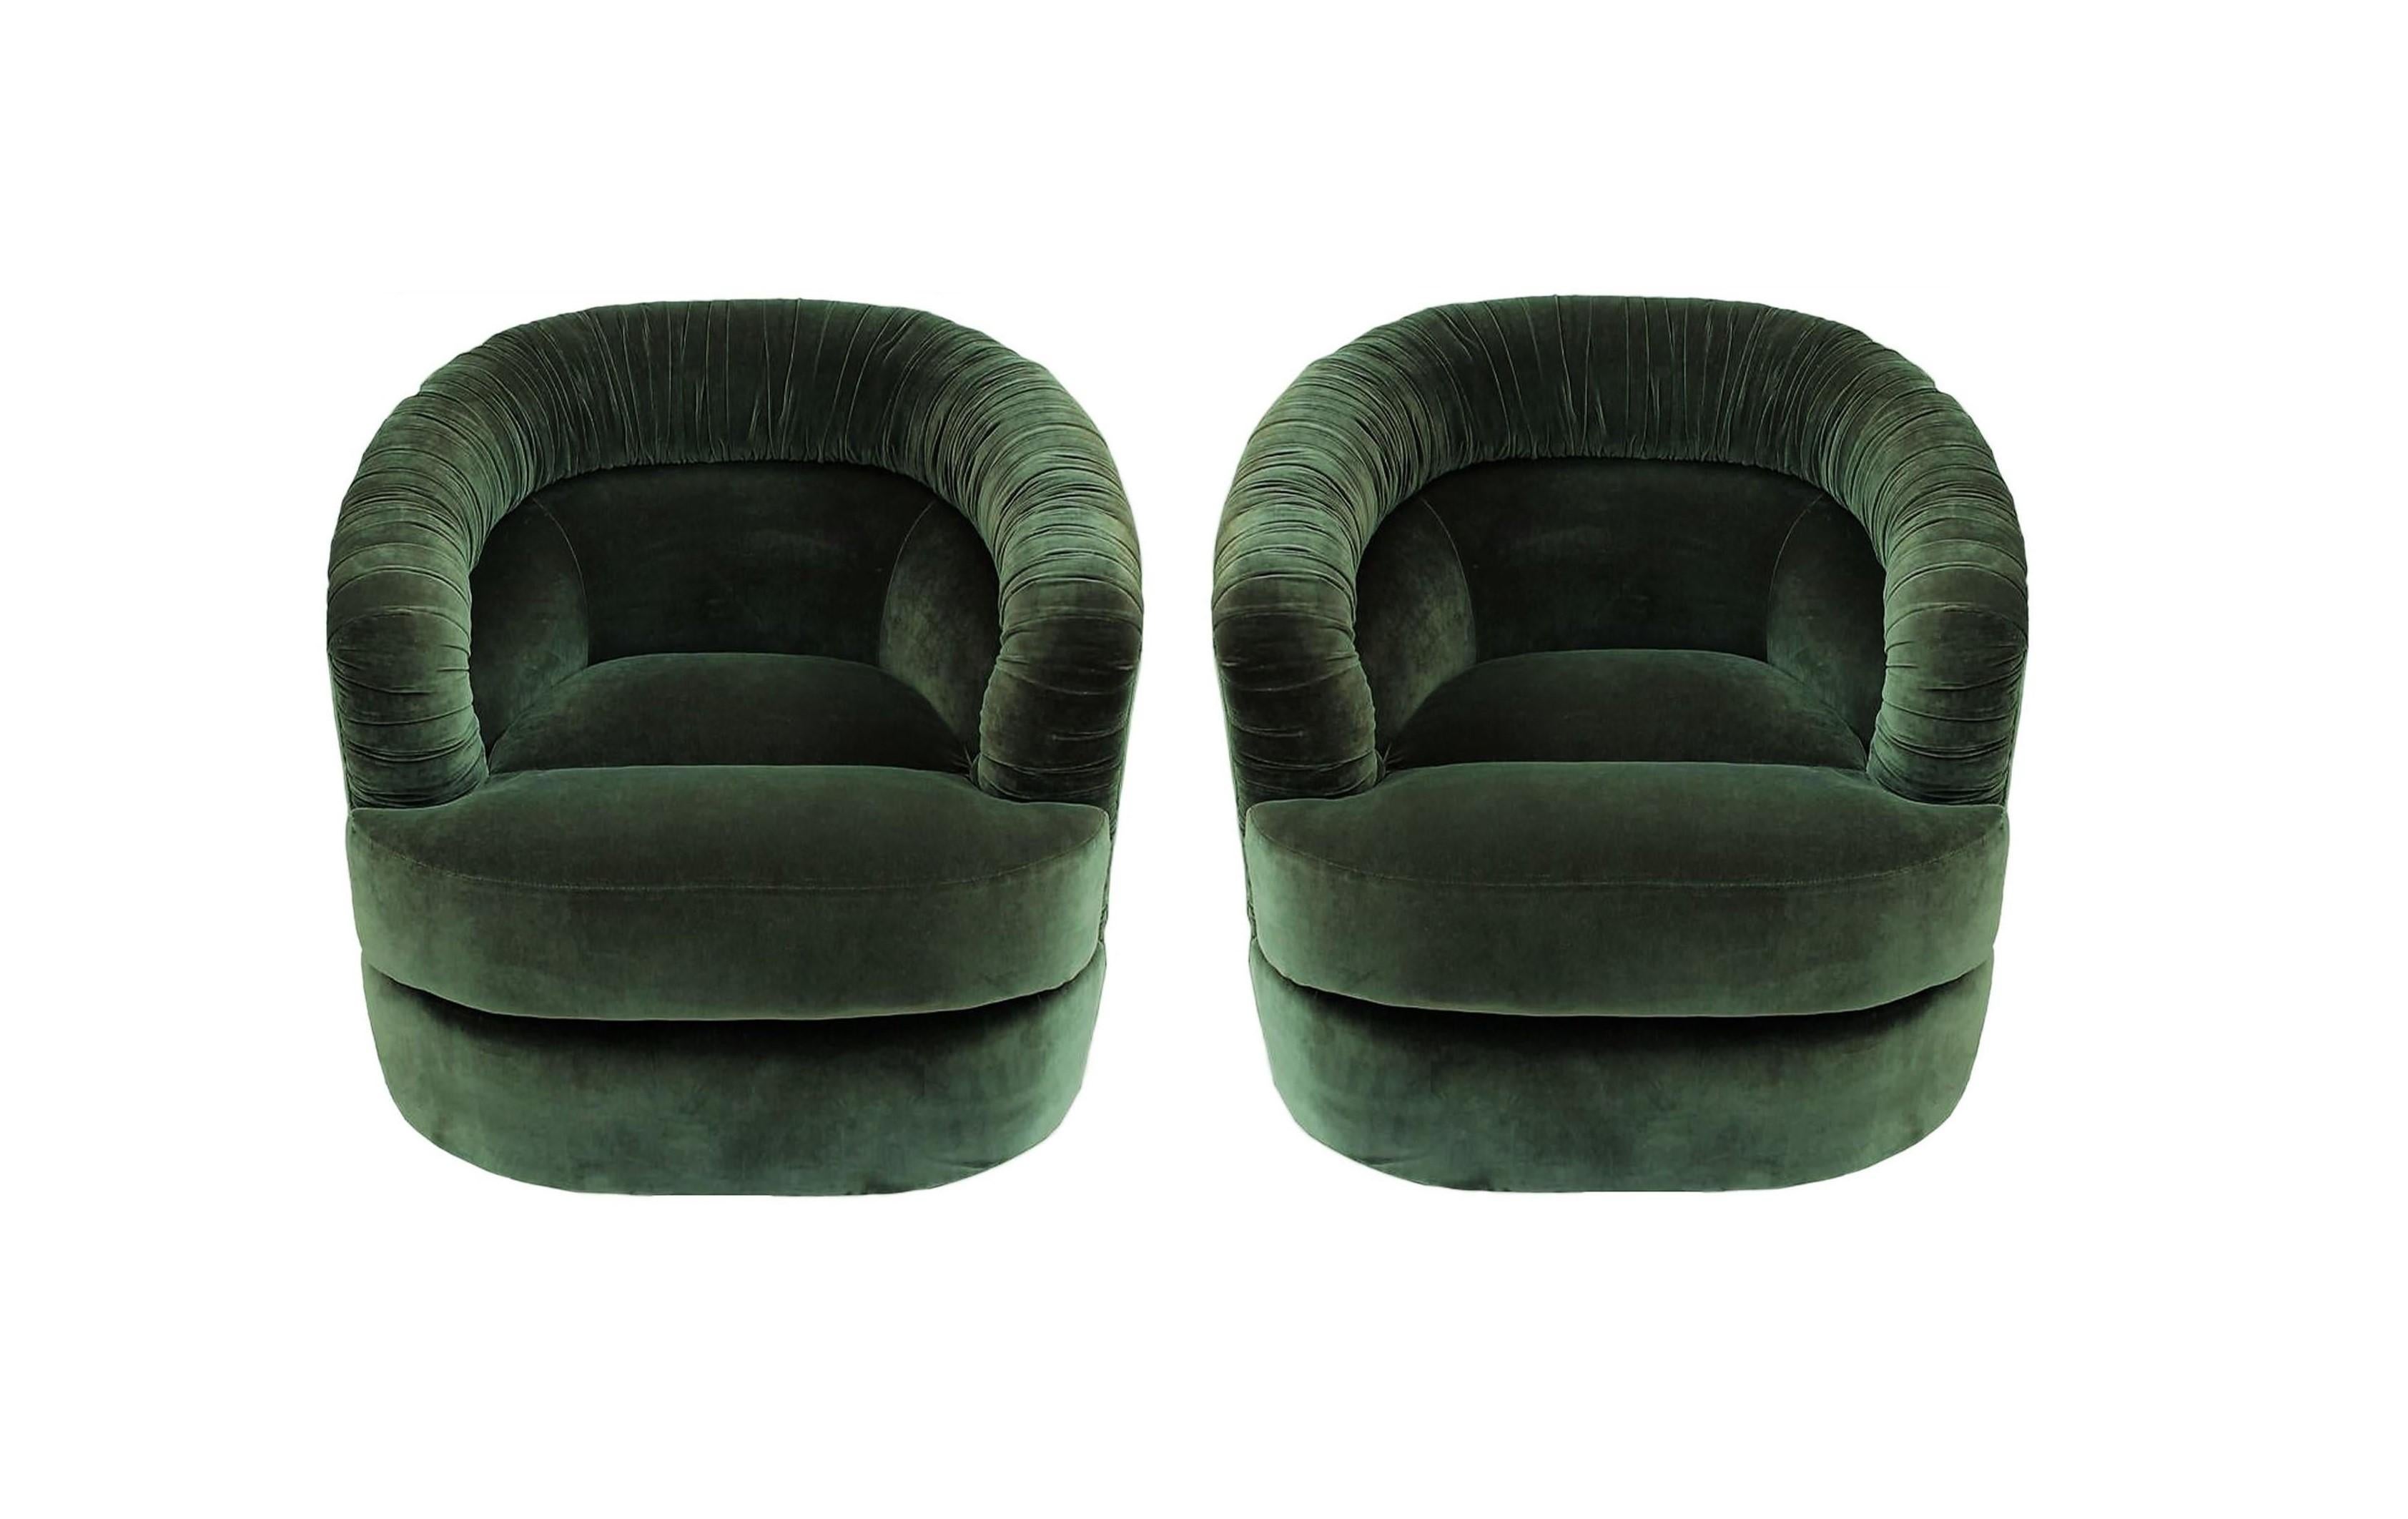 Paire unique de fauteuils club pivotants de style Milo Baughman. Ces chaises attrayantes représentent le mélange parfait de design, de fonction et de confort. Luxueusement recouverts de velours vert, ces fauteuils larges et confortables ont un